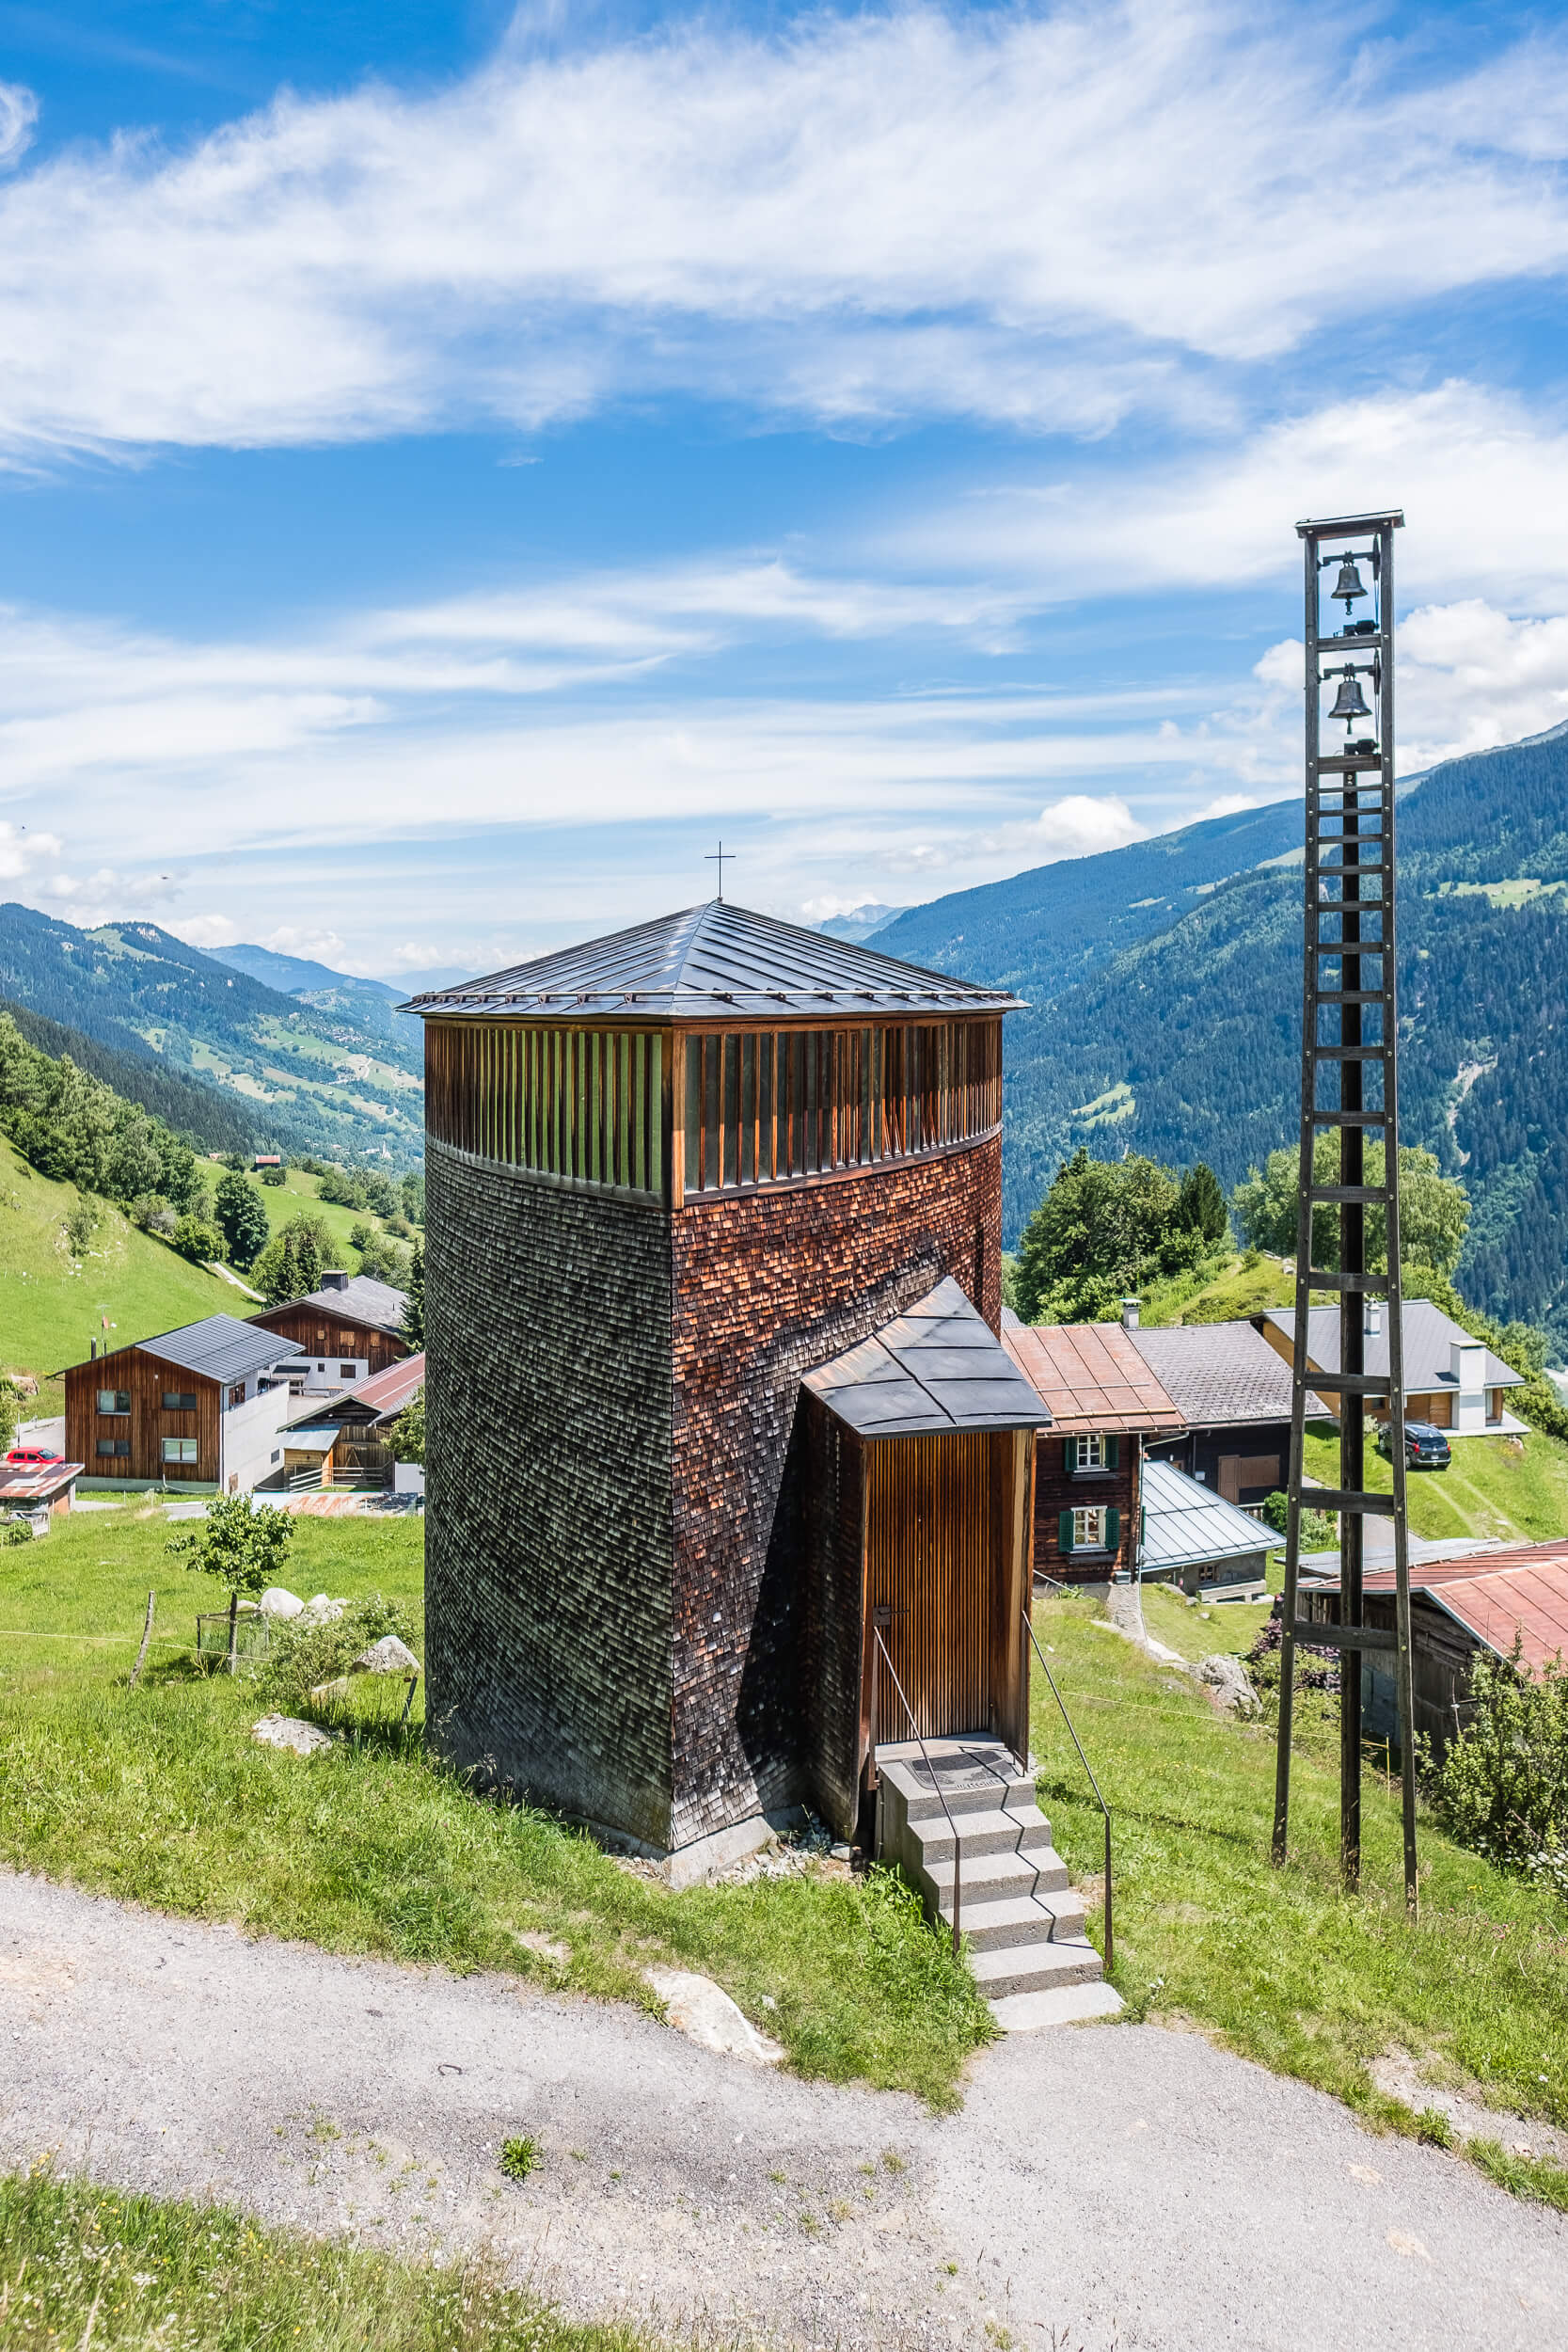 Saint Benedict Chapel in Sumvitg, Switzerland